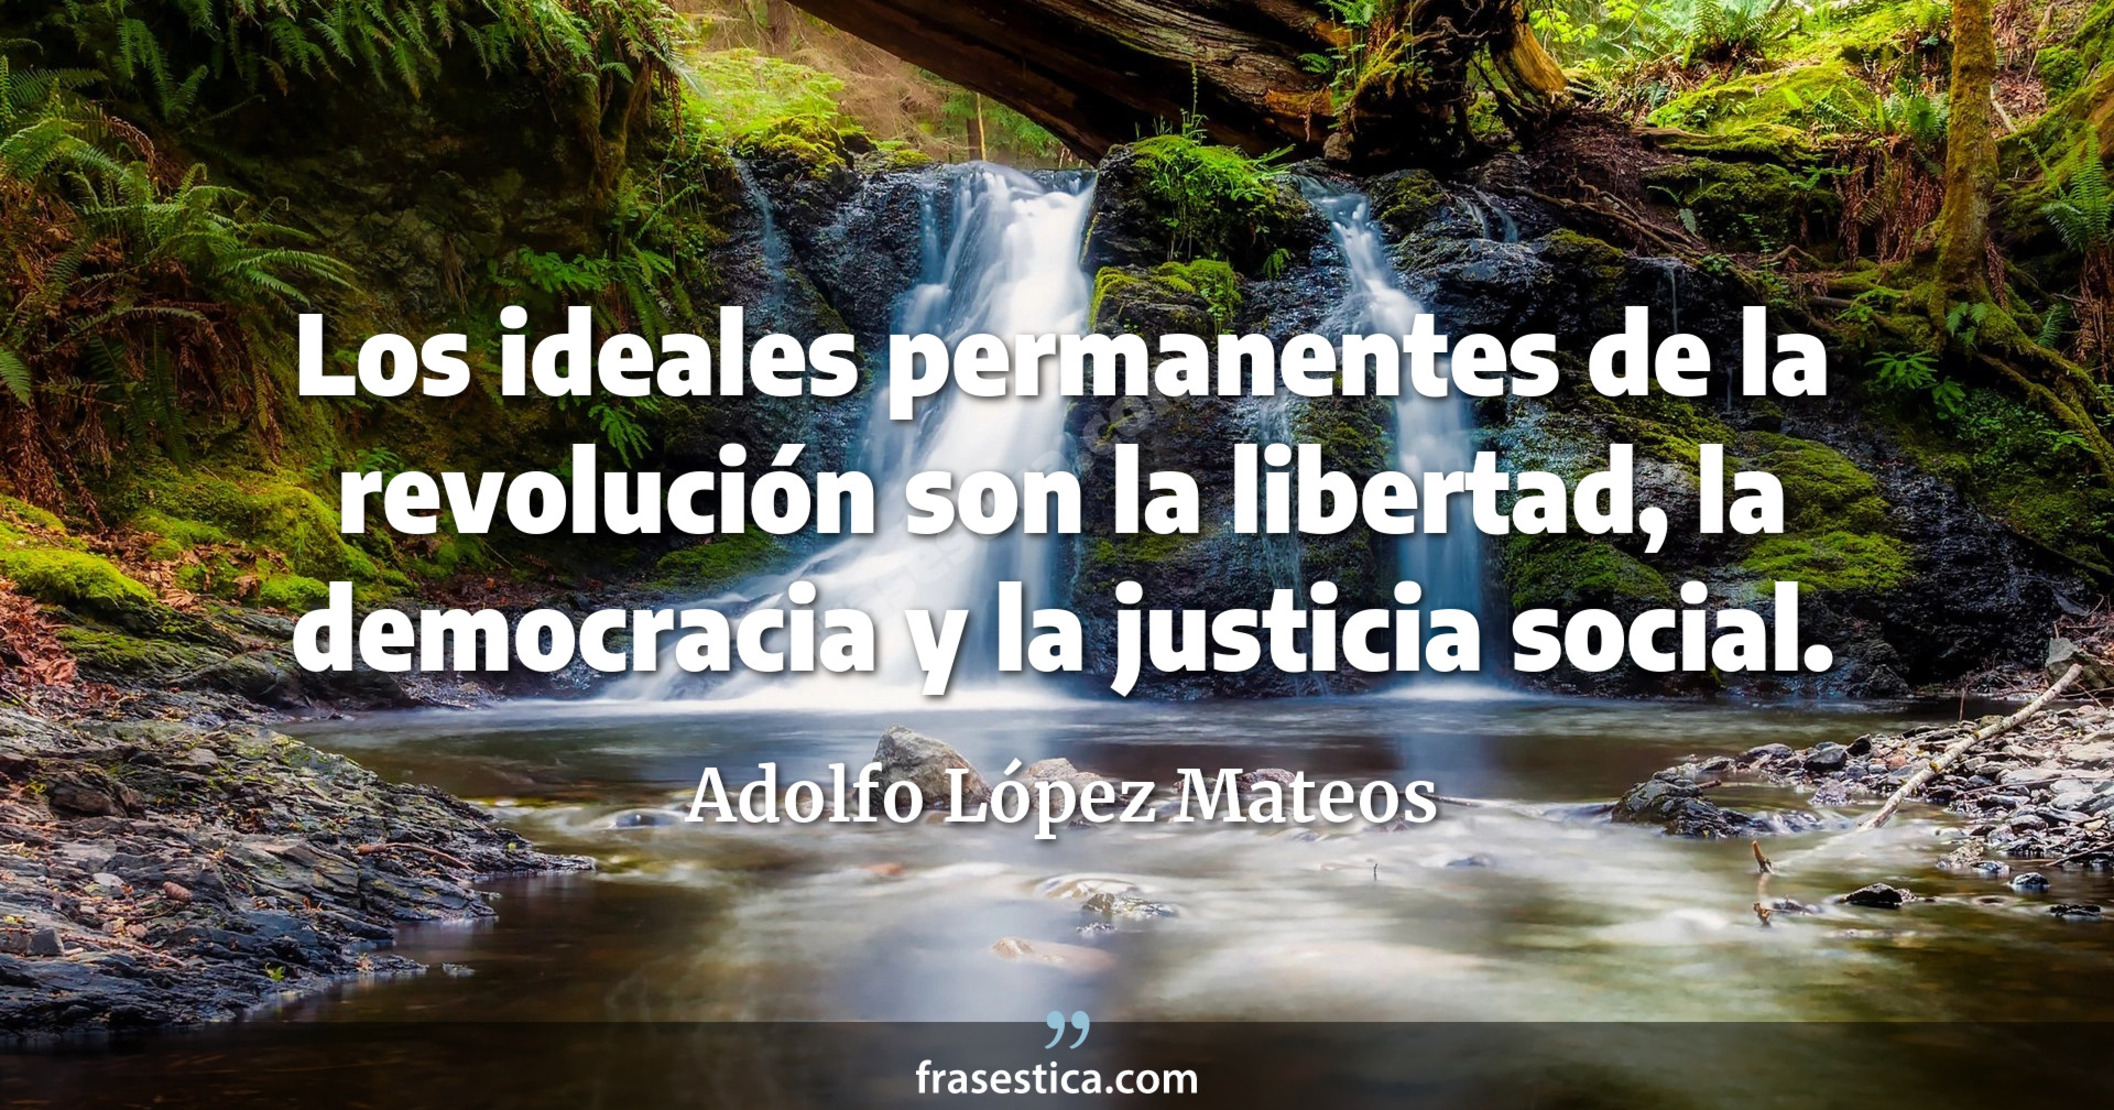 Los ideales permanentes de la revolución son la libertad, la democracia y la justicia social. - Adolfo López Mateos